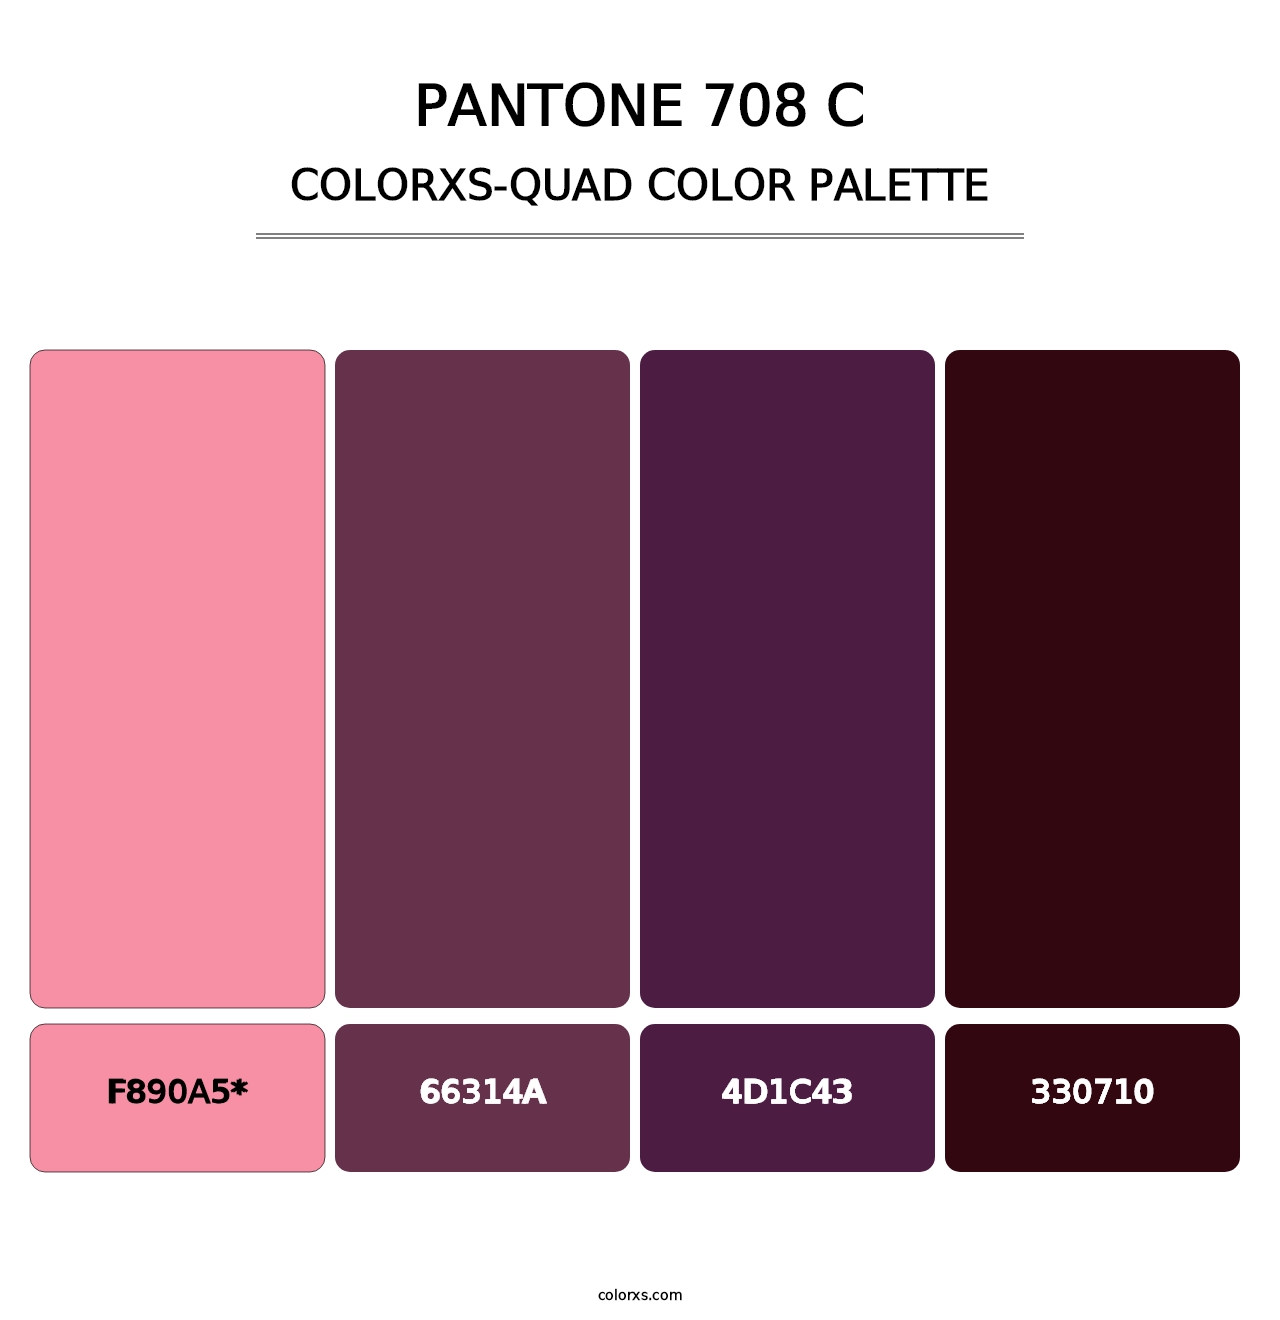 PANTONE 708 C - Colorxs Quad Palette